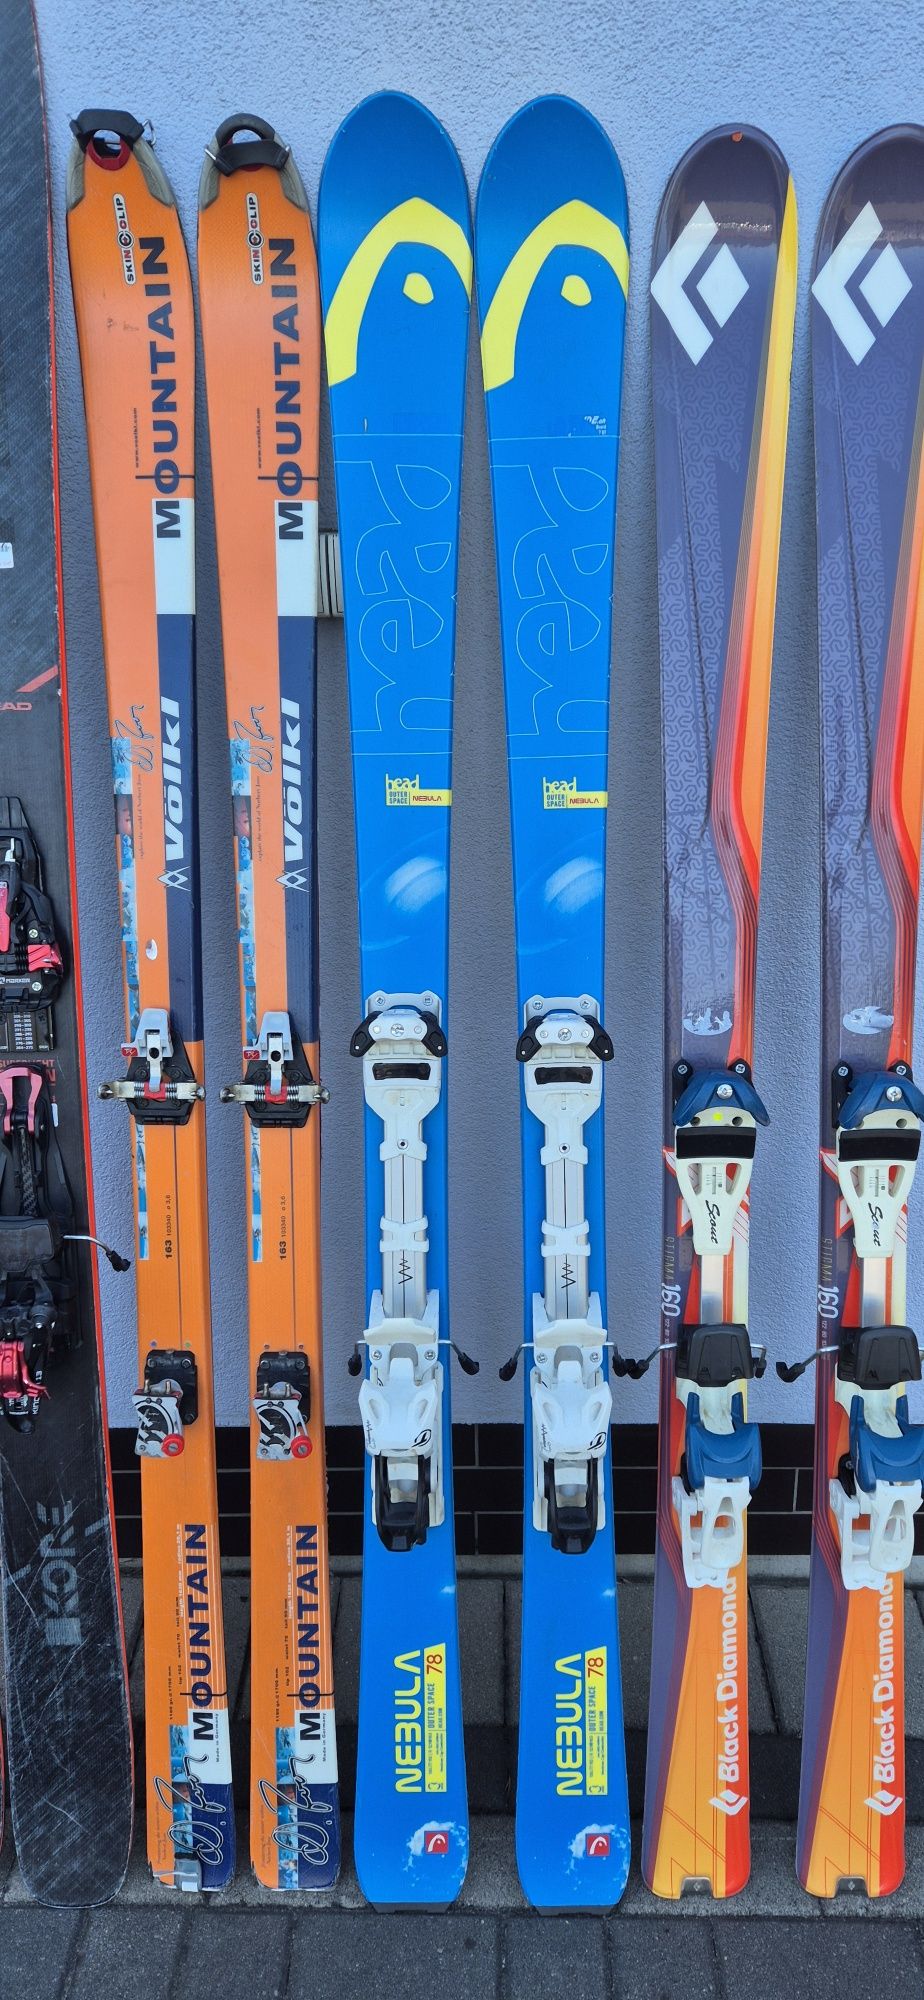 Narty skiturowe pinowe i szynowe pakiet nart